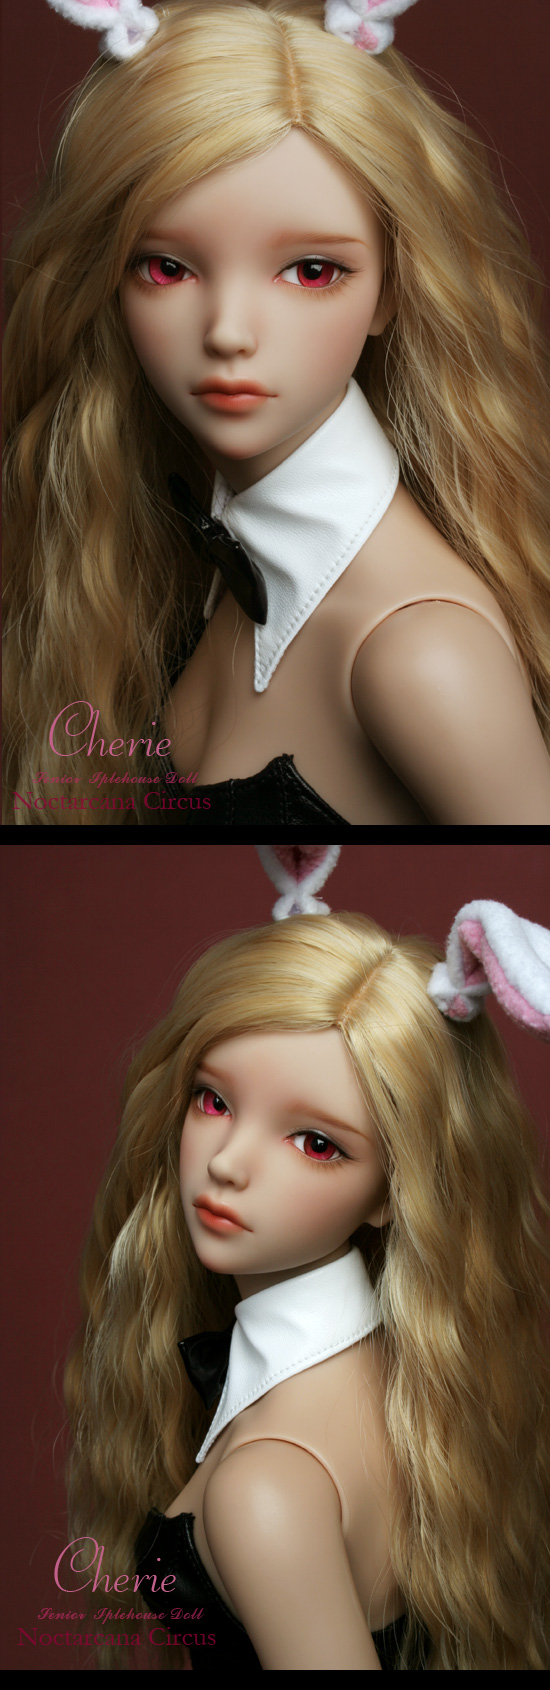 Cherie Bunny girls bjd.jpg